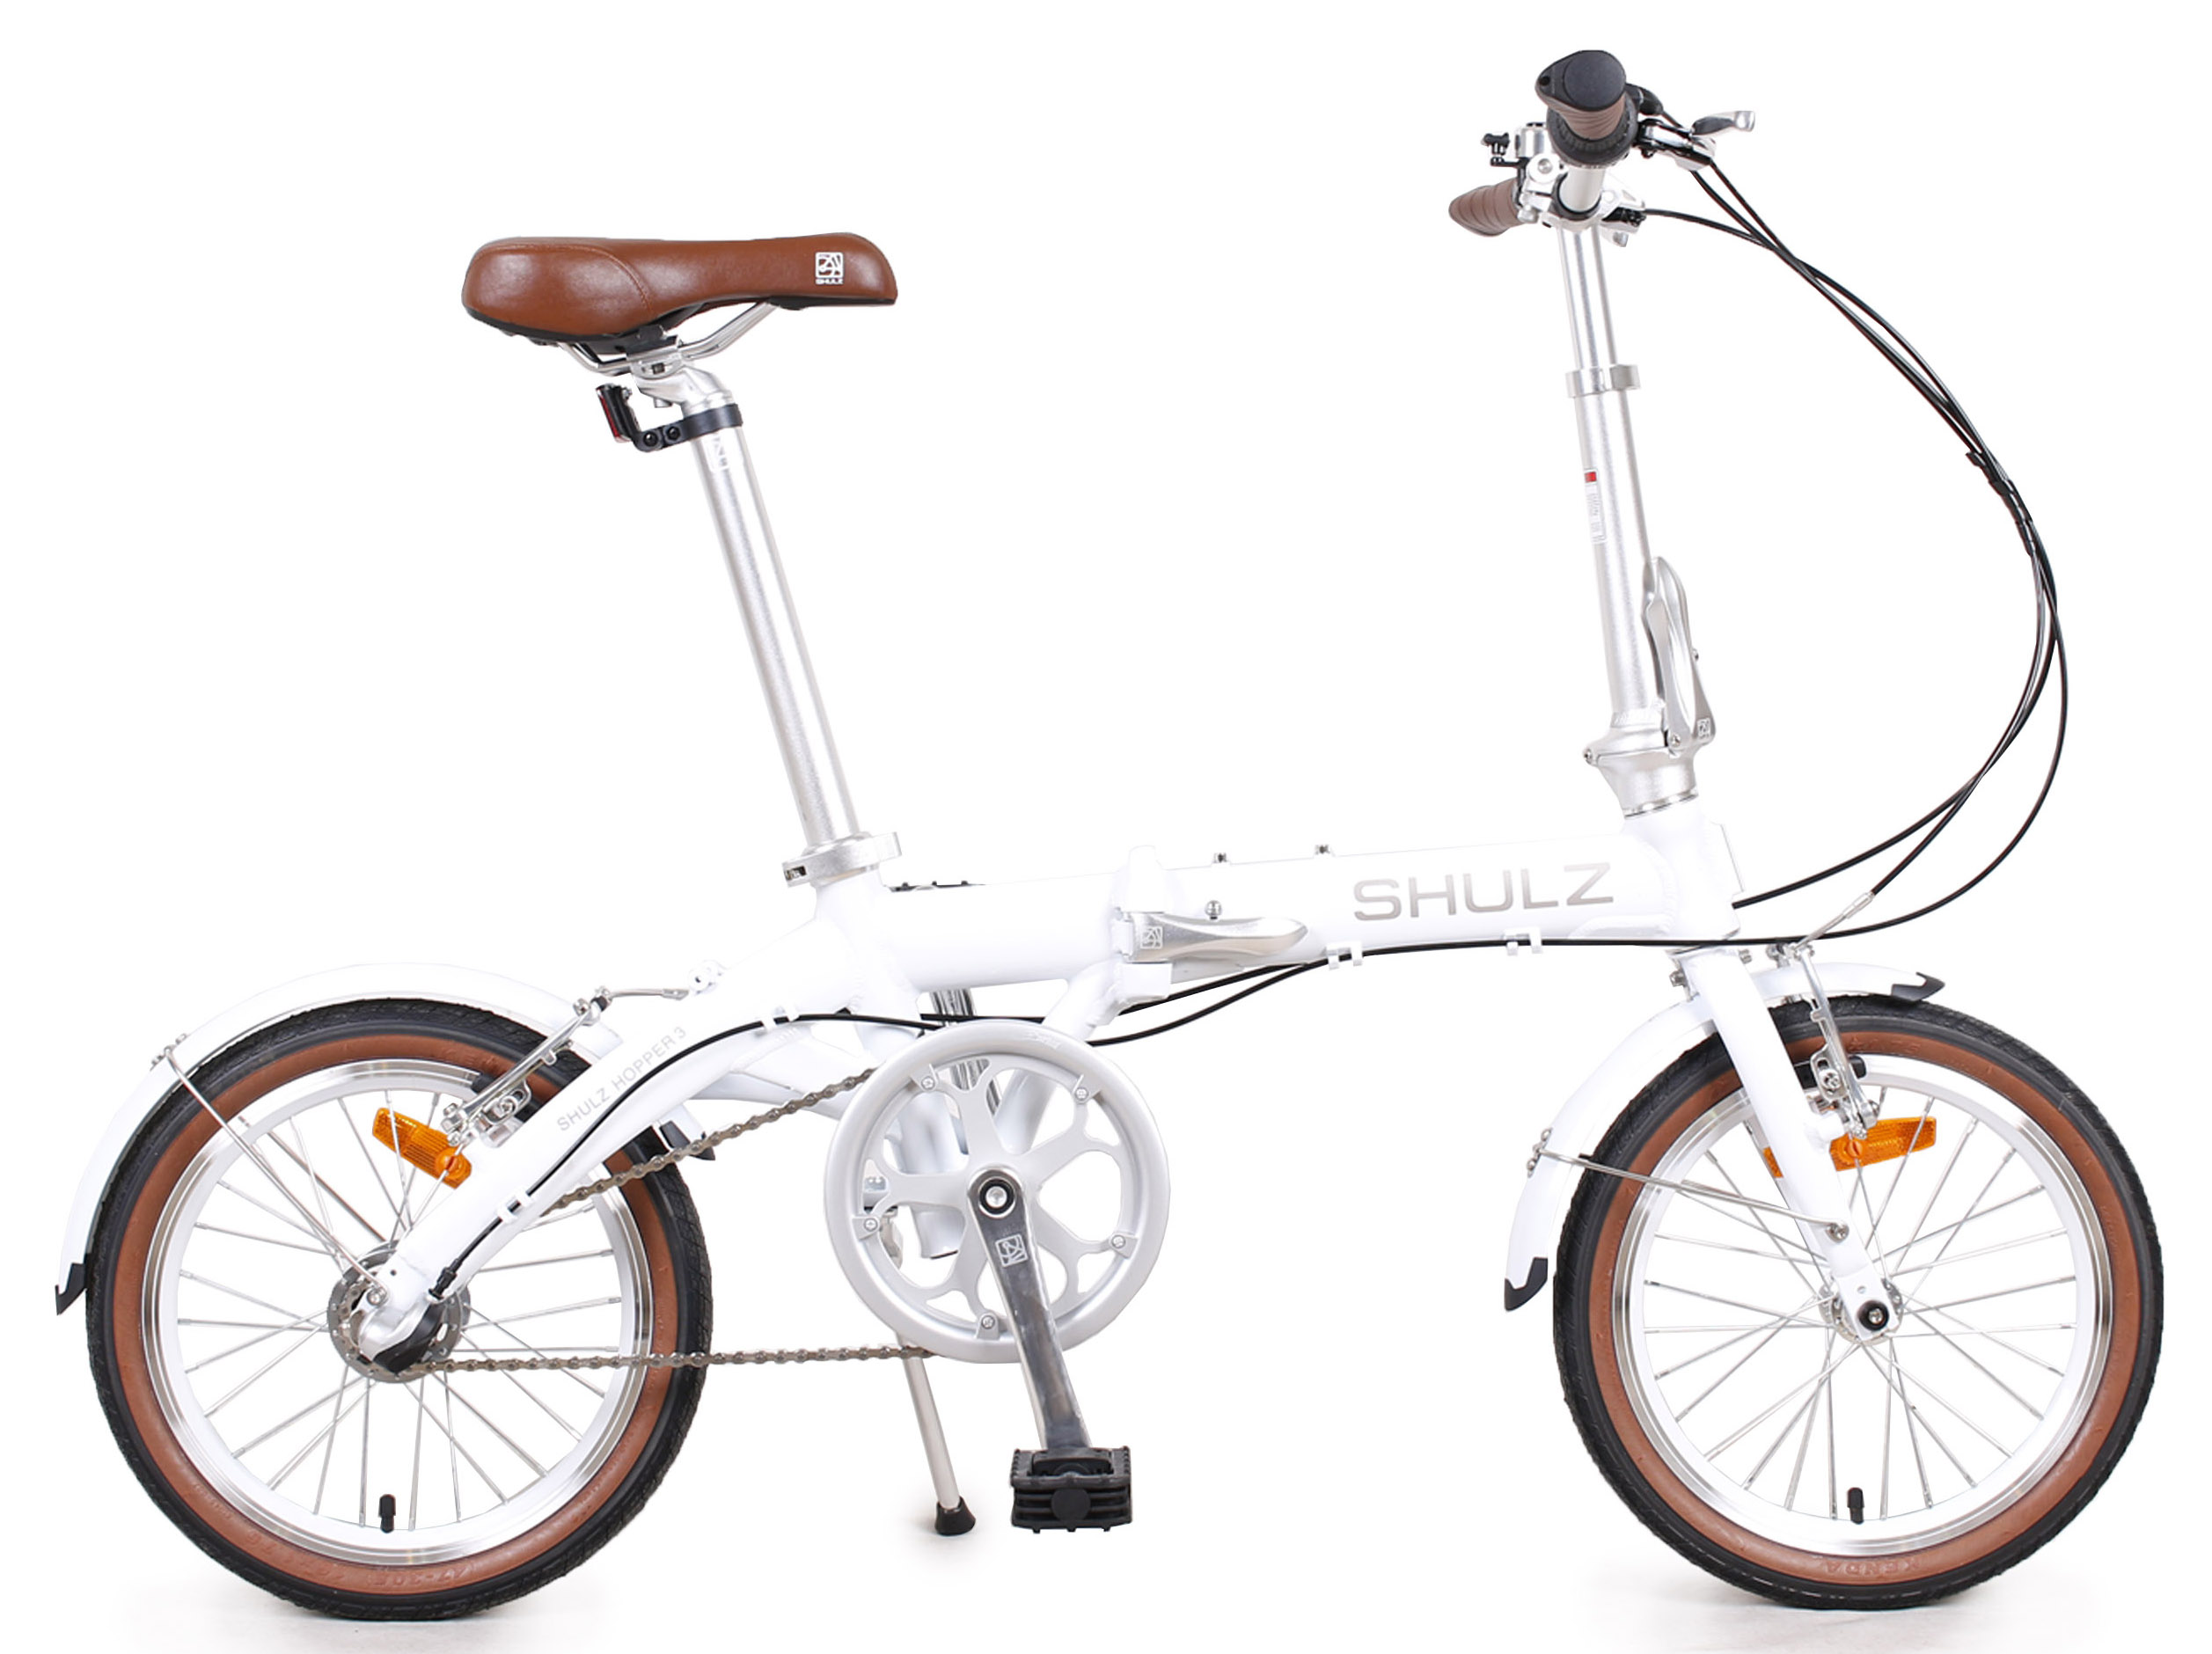  Отзывы о Складном велосипеде Shulz Hopper 3 2020